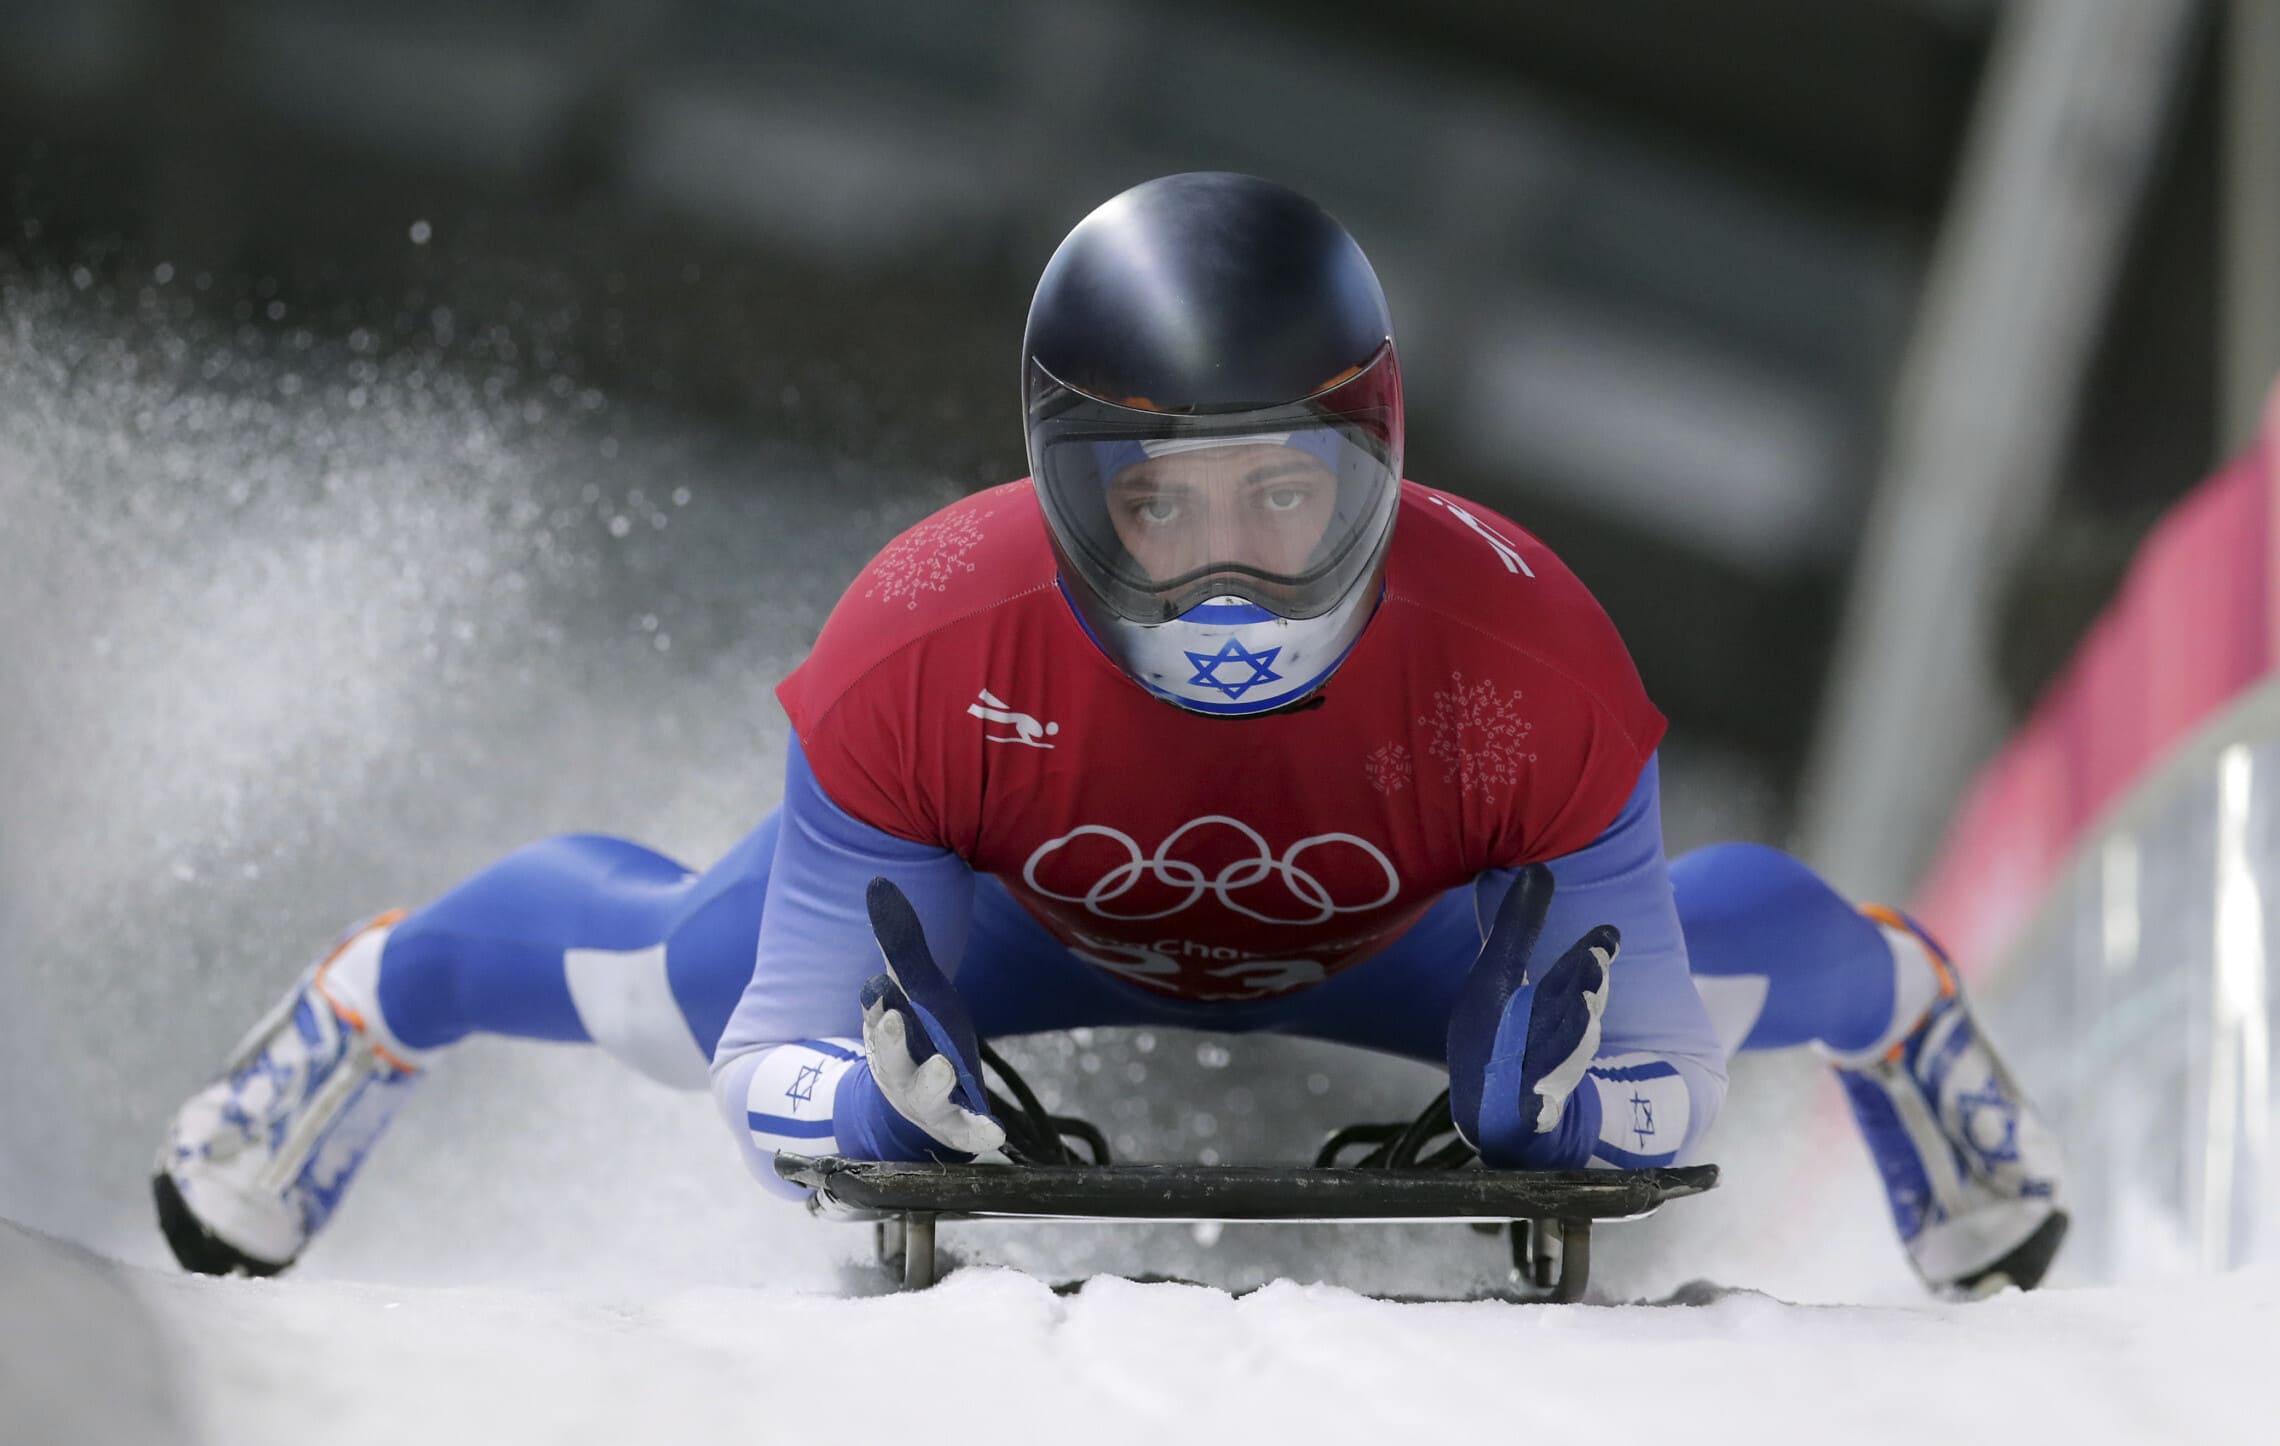 אדם אדלמן בתחרות הסקלטון במשחקי החורף האולימפיים של 2018 (צילום: AP Photo/Michael Sohn)